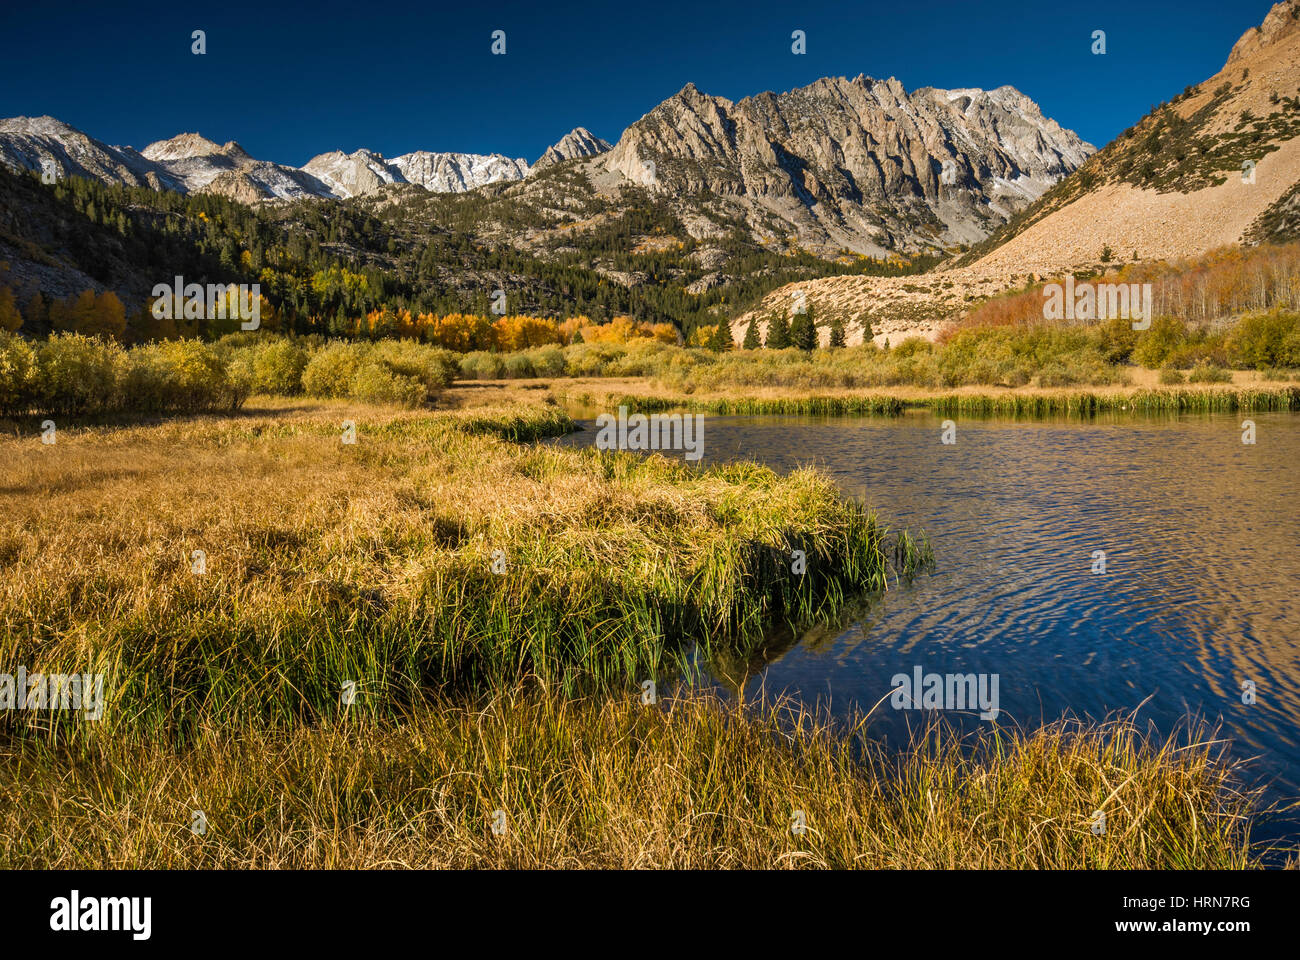 Dans le bassin nord du lac Sabrina, Mt. Lamarck à grande distance, l'évolution nationale, John Muir Wilderness, est de la Sierra Nevada, Californie, USA Banque D'Images